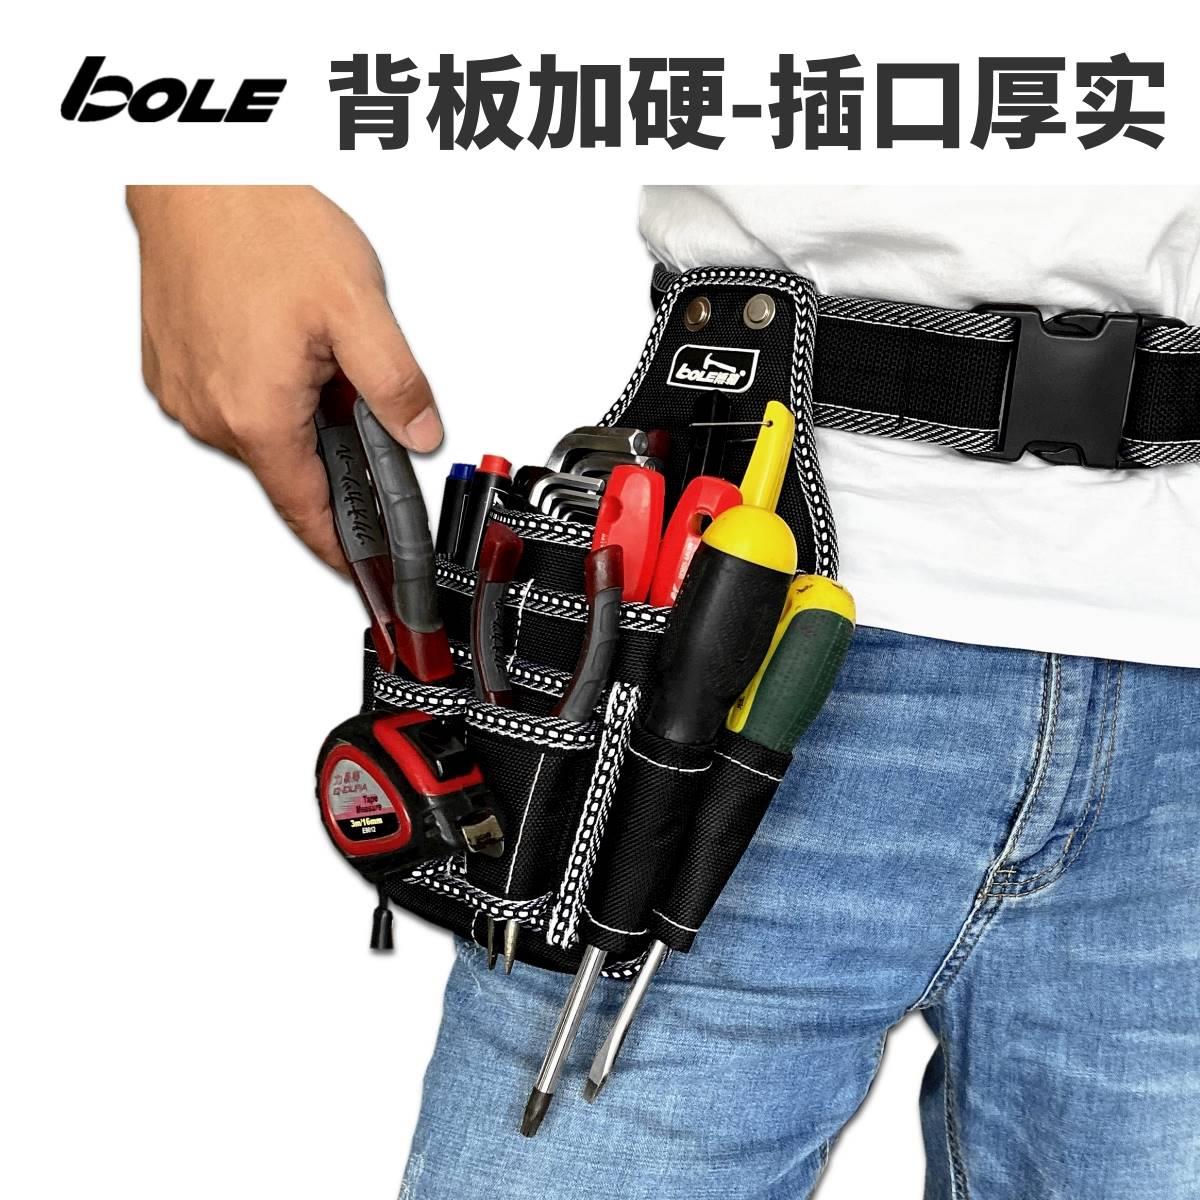 新品博勒BOLE工具包加厚加强随身工具腰包电工工具袋加厚背板硬质